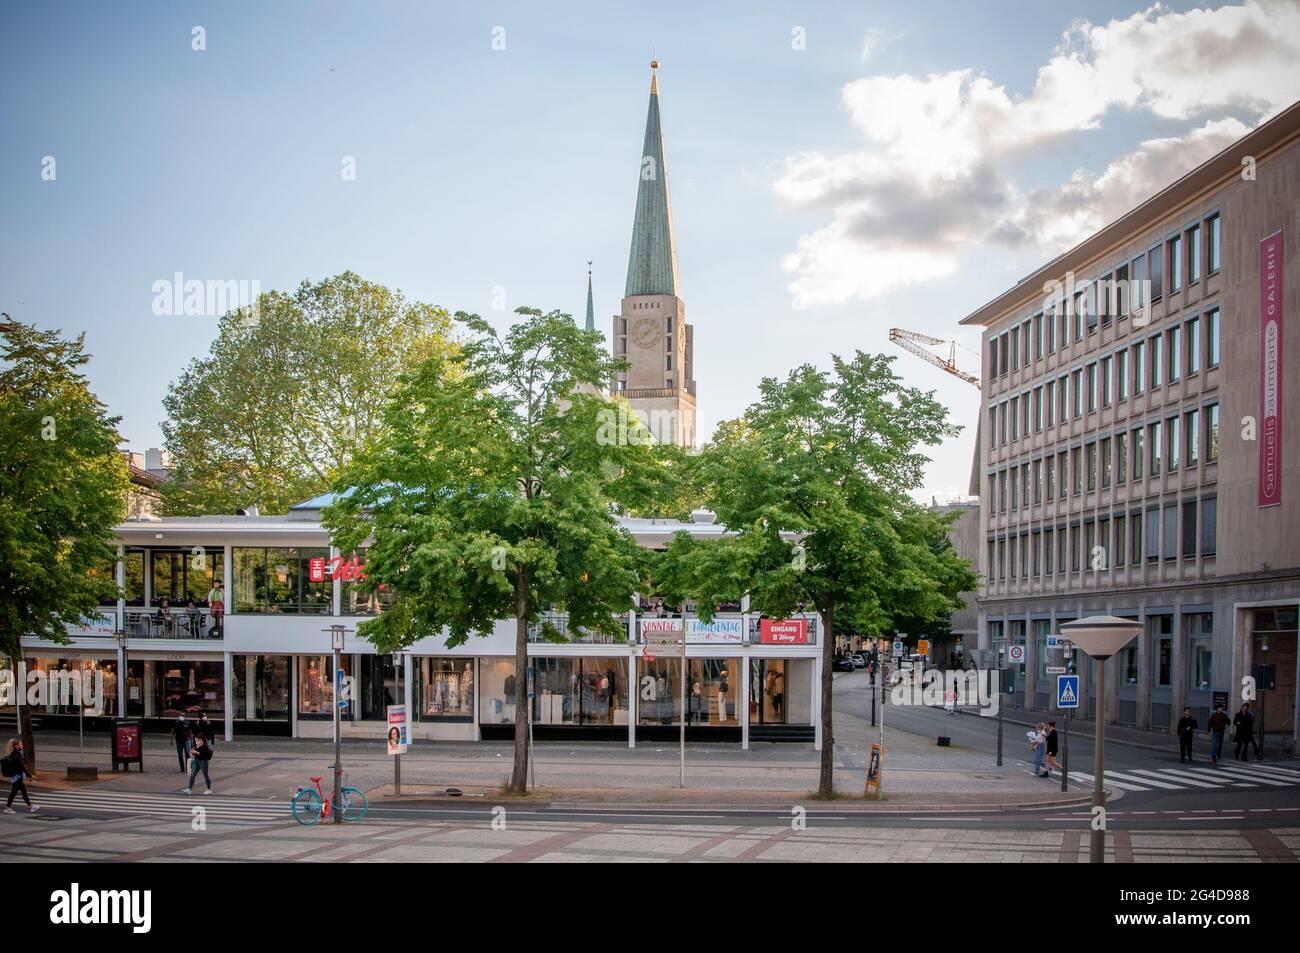 BIELEFELD, ALLEMAGNE. 12 JUIN 2021. Belle vue sur la petite ville allemande avec une architecture typique. Restaurants dans la rue. Banque D'Images